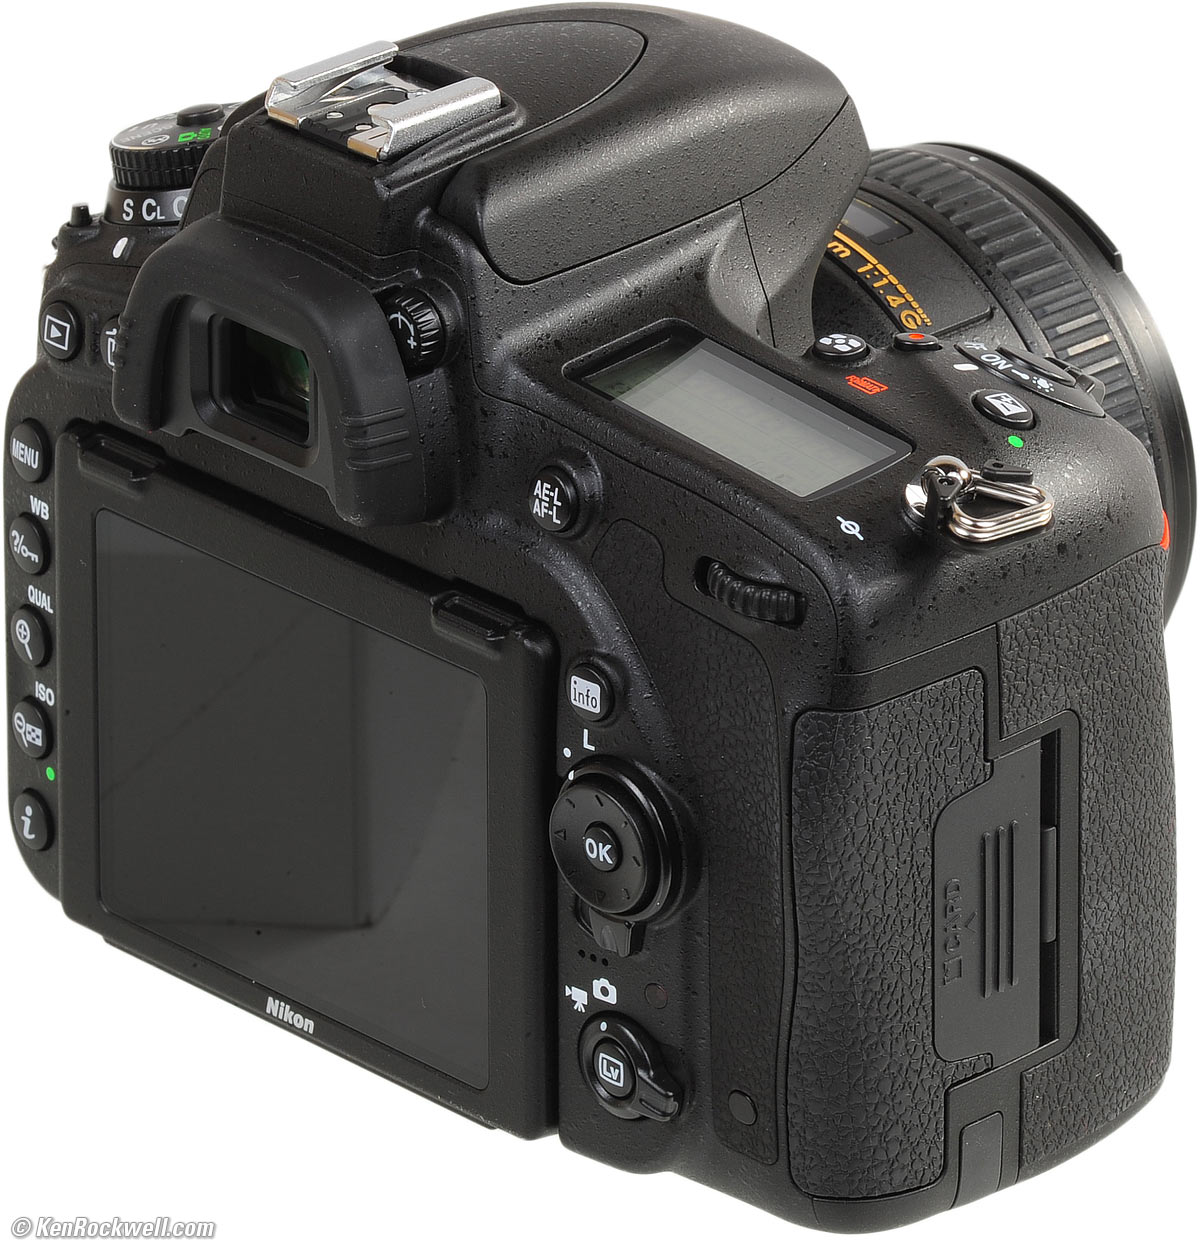 カメラ デジタルカメラ Nikon D750 Review & Sample Images by Ken Rockwell